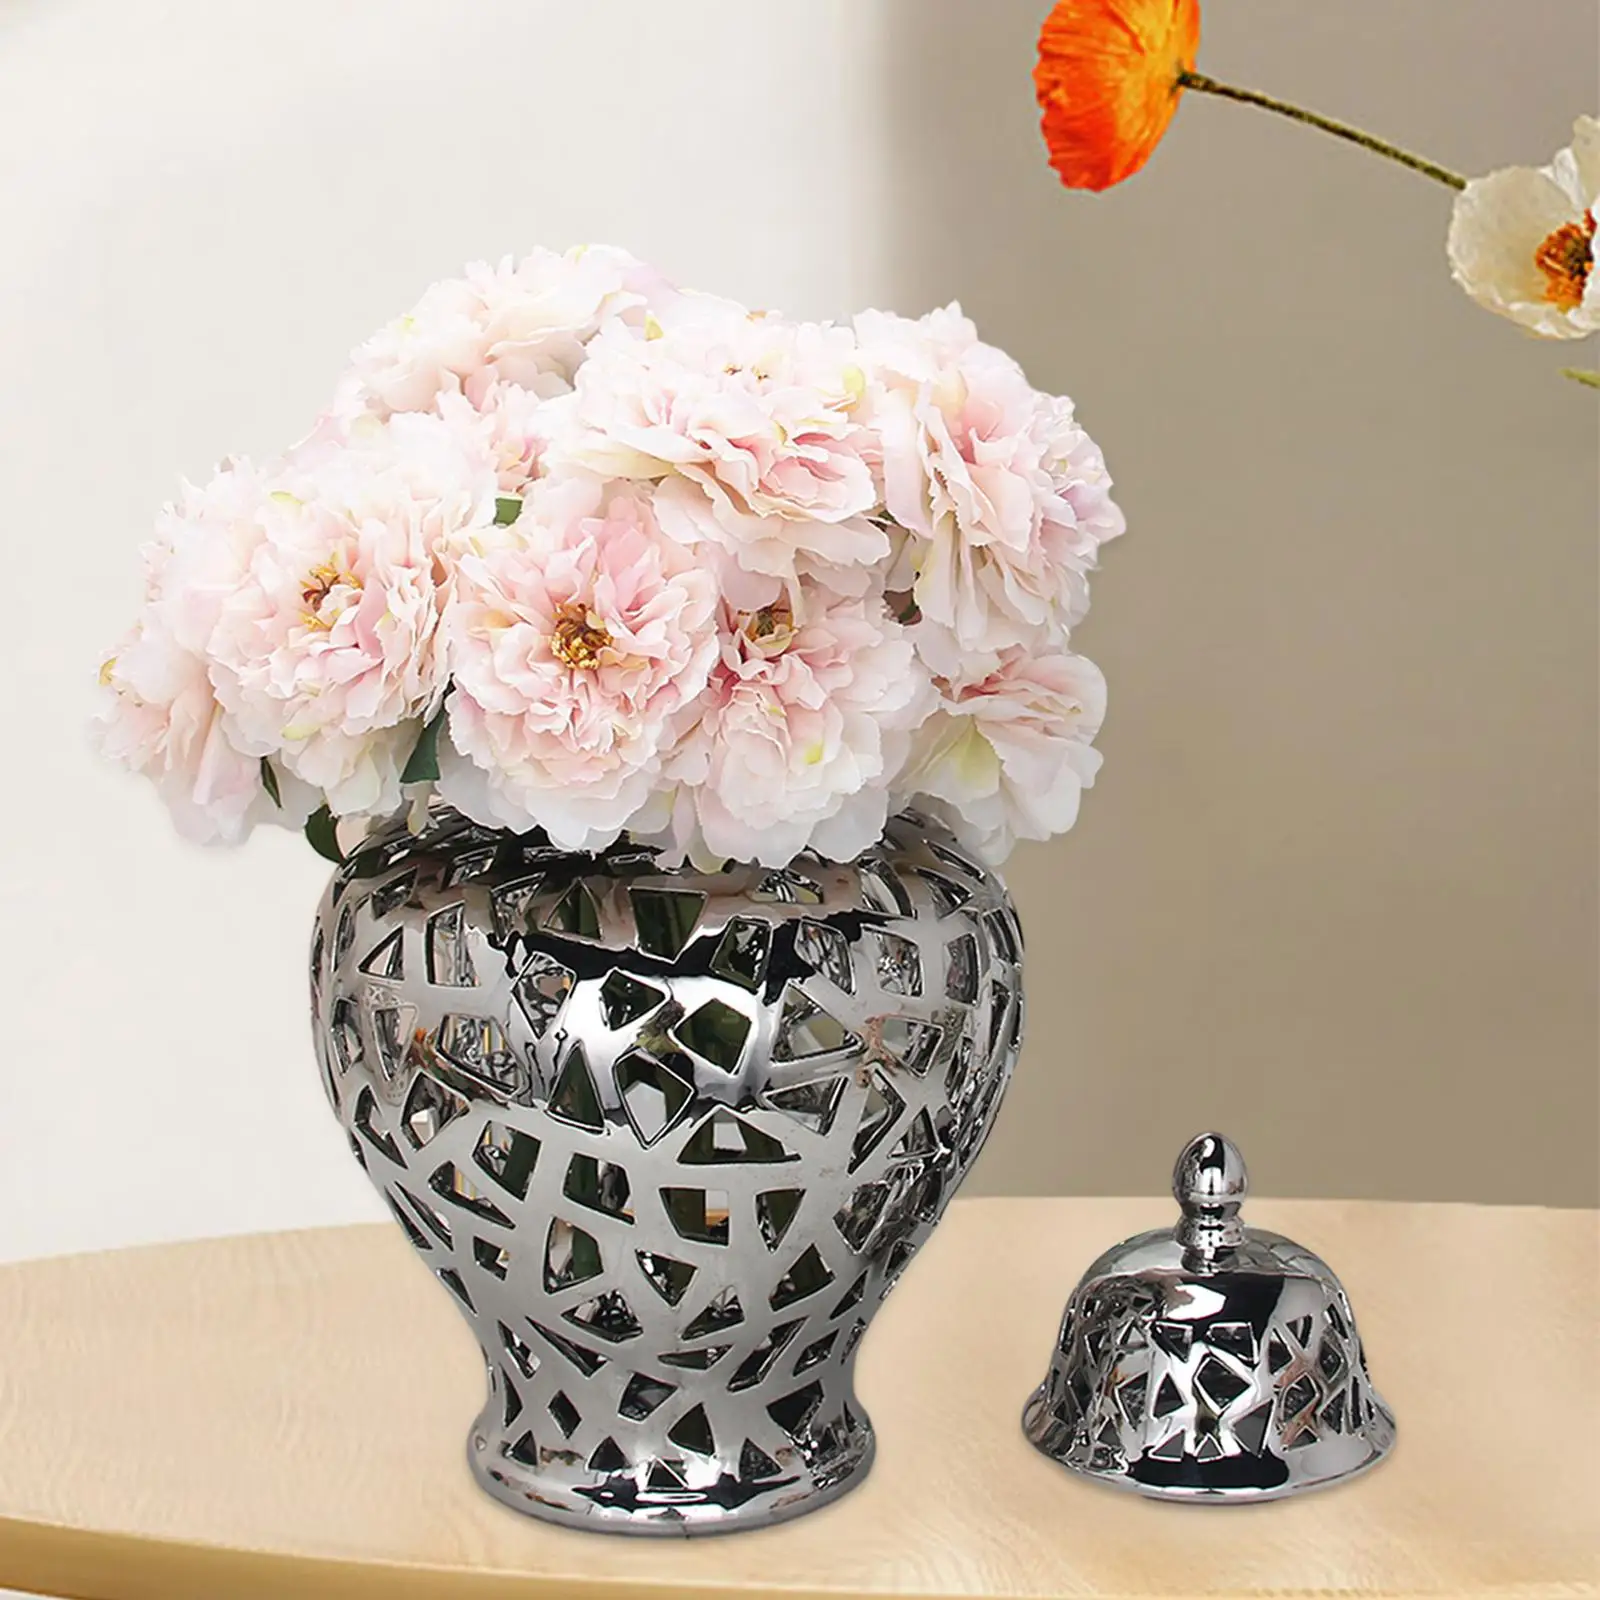 Ceramic Flower Vase Elegant Lattice Porcelain Ginger Jar Collection for Bedroom Living Room Home Office Wedding Party Decoration